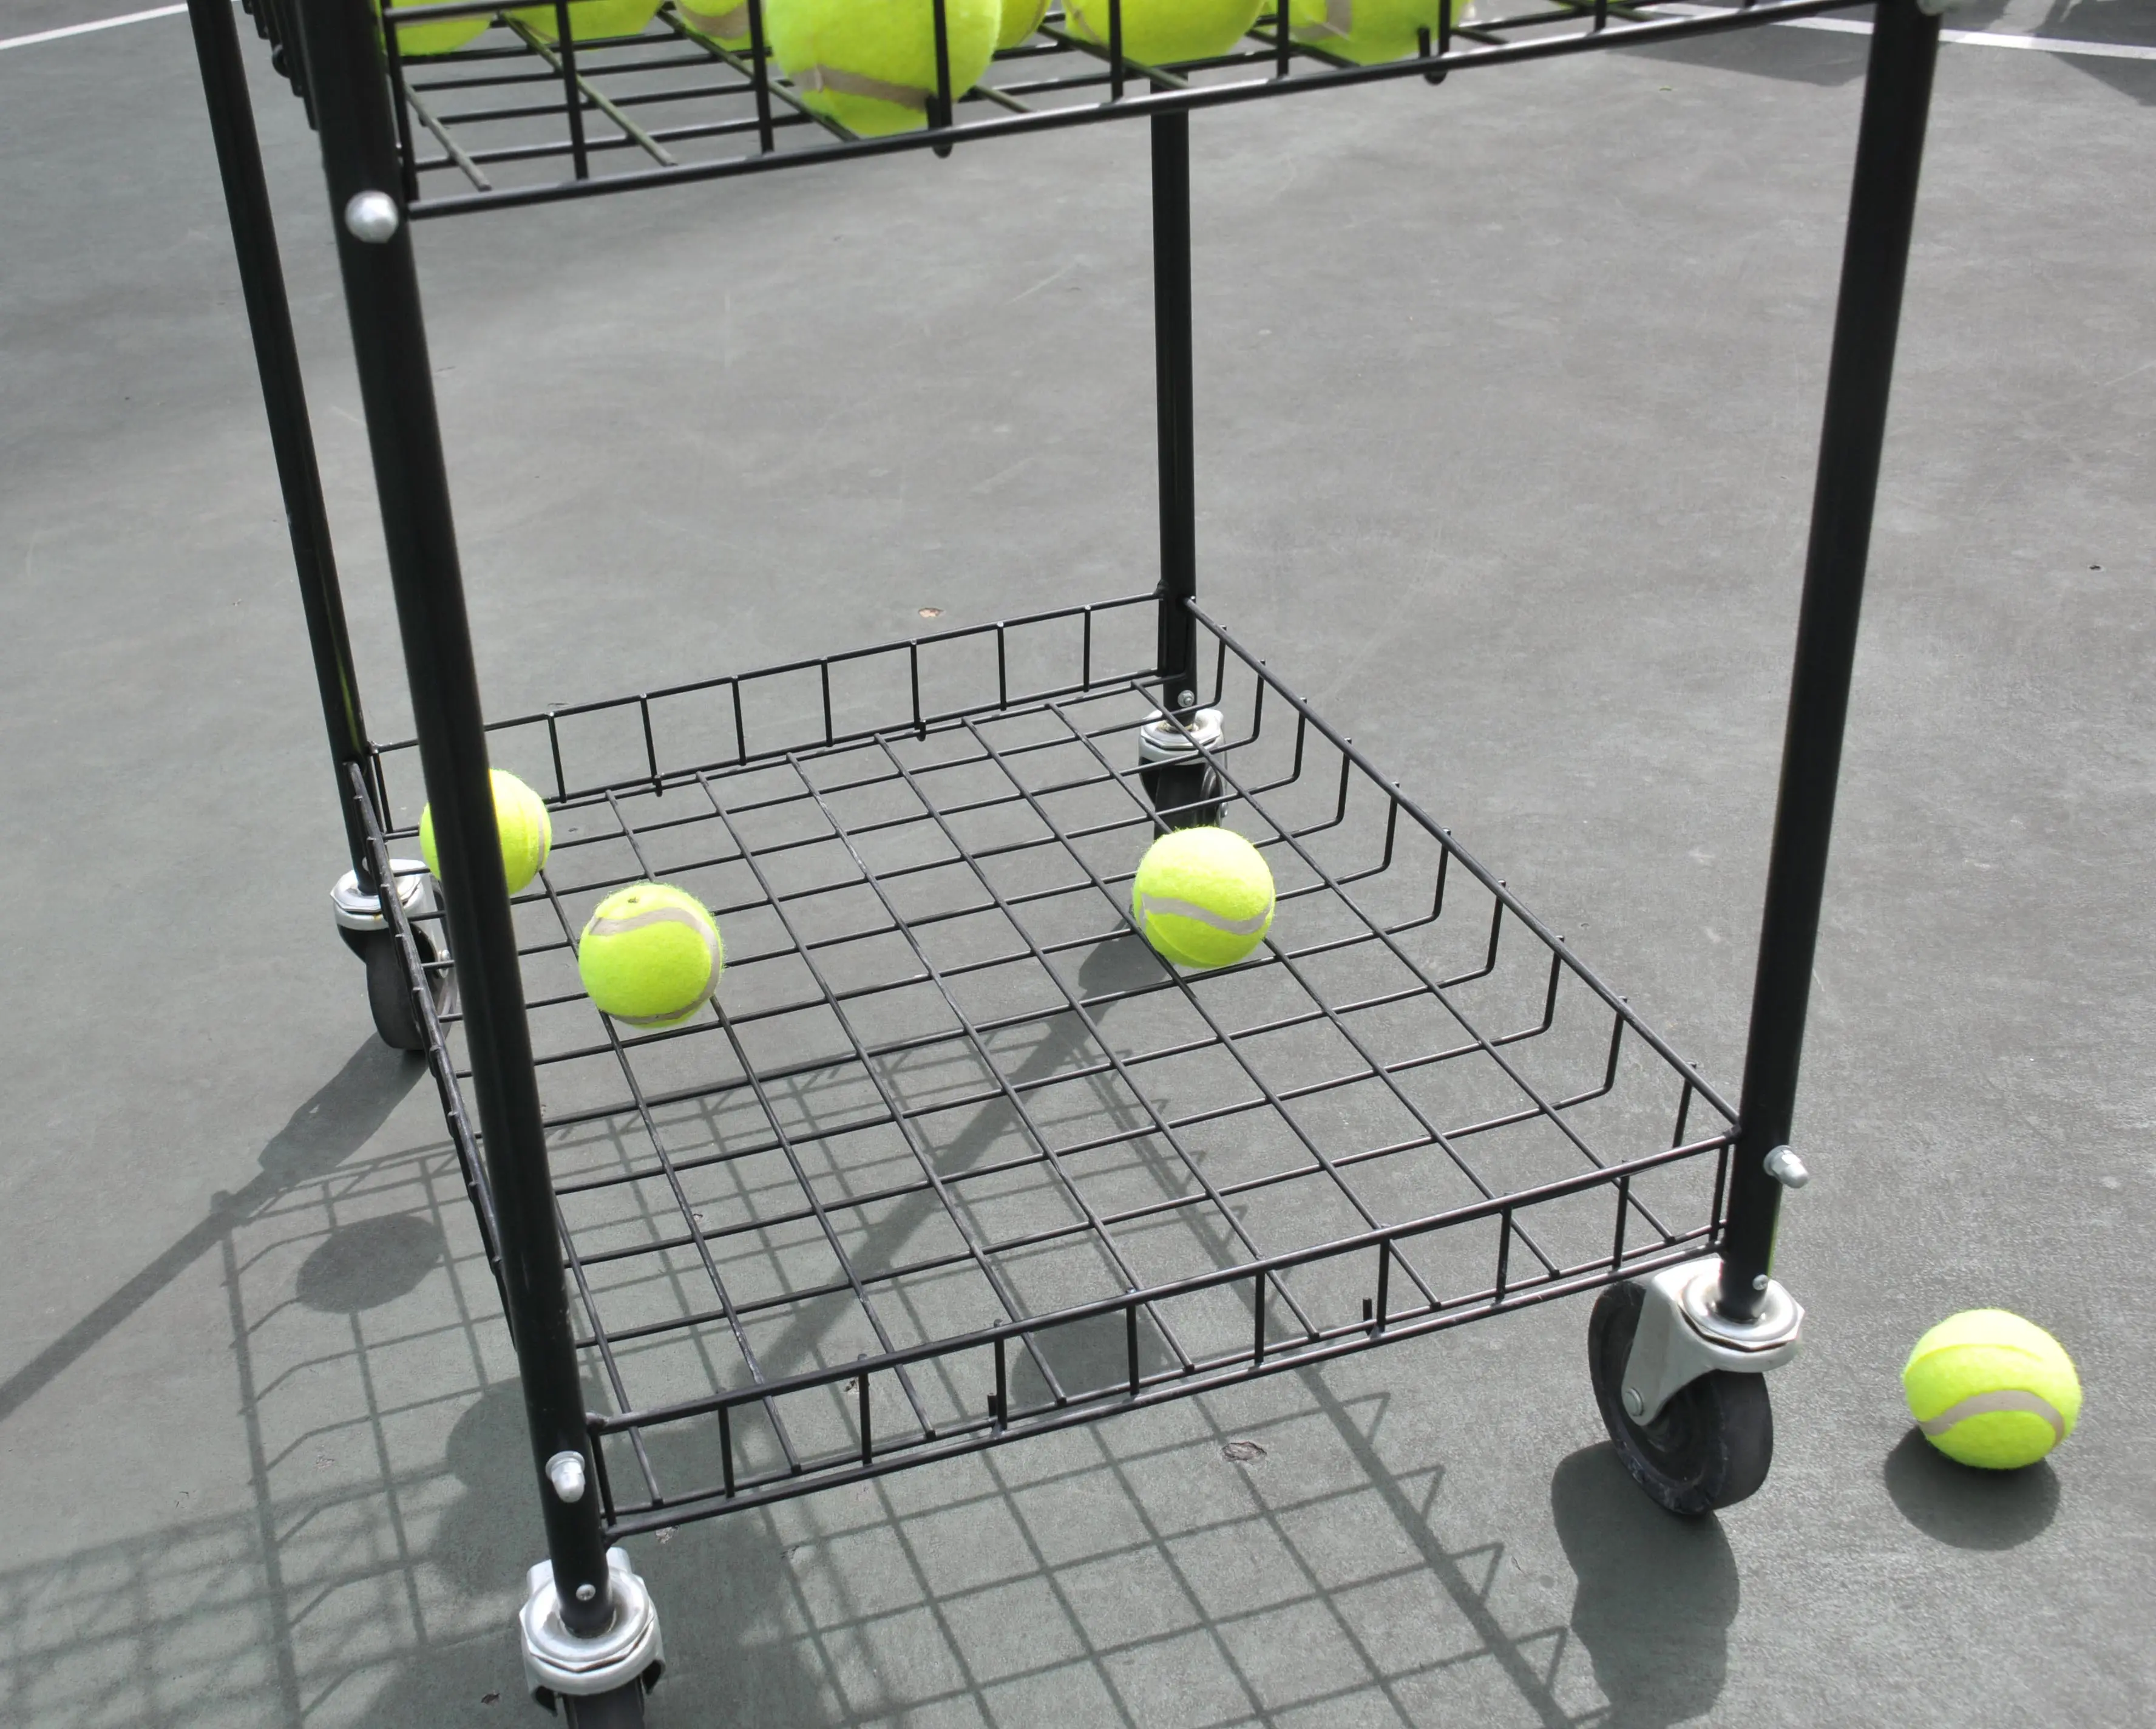 Carros de viaje y enseñanza de tenis: equipo deportivo único, gran capacidad de bolas, accesorios ideales para canchas de entrenamiento